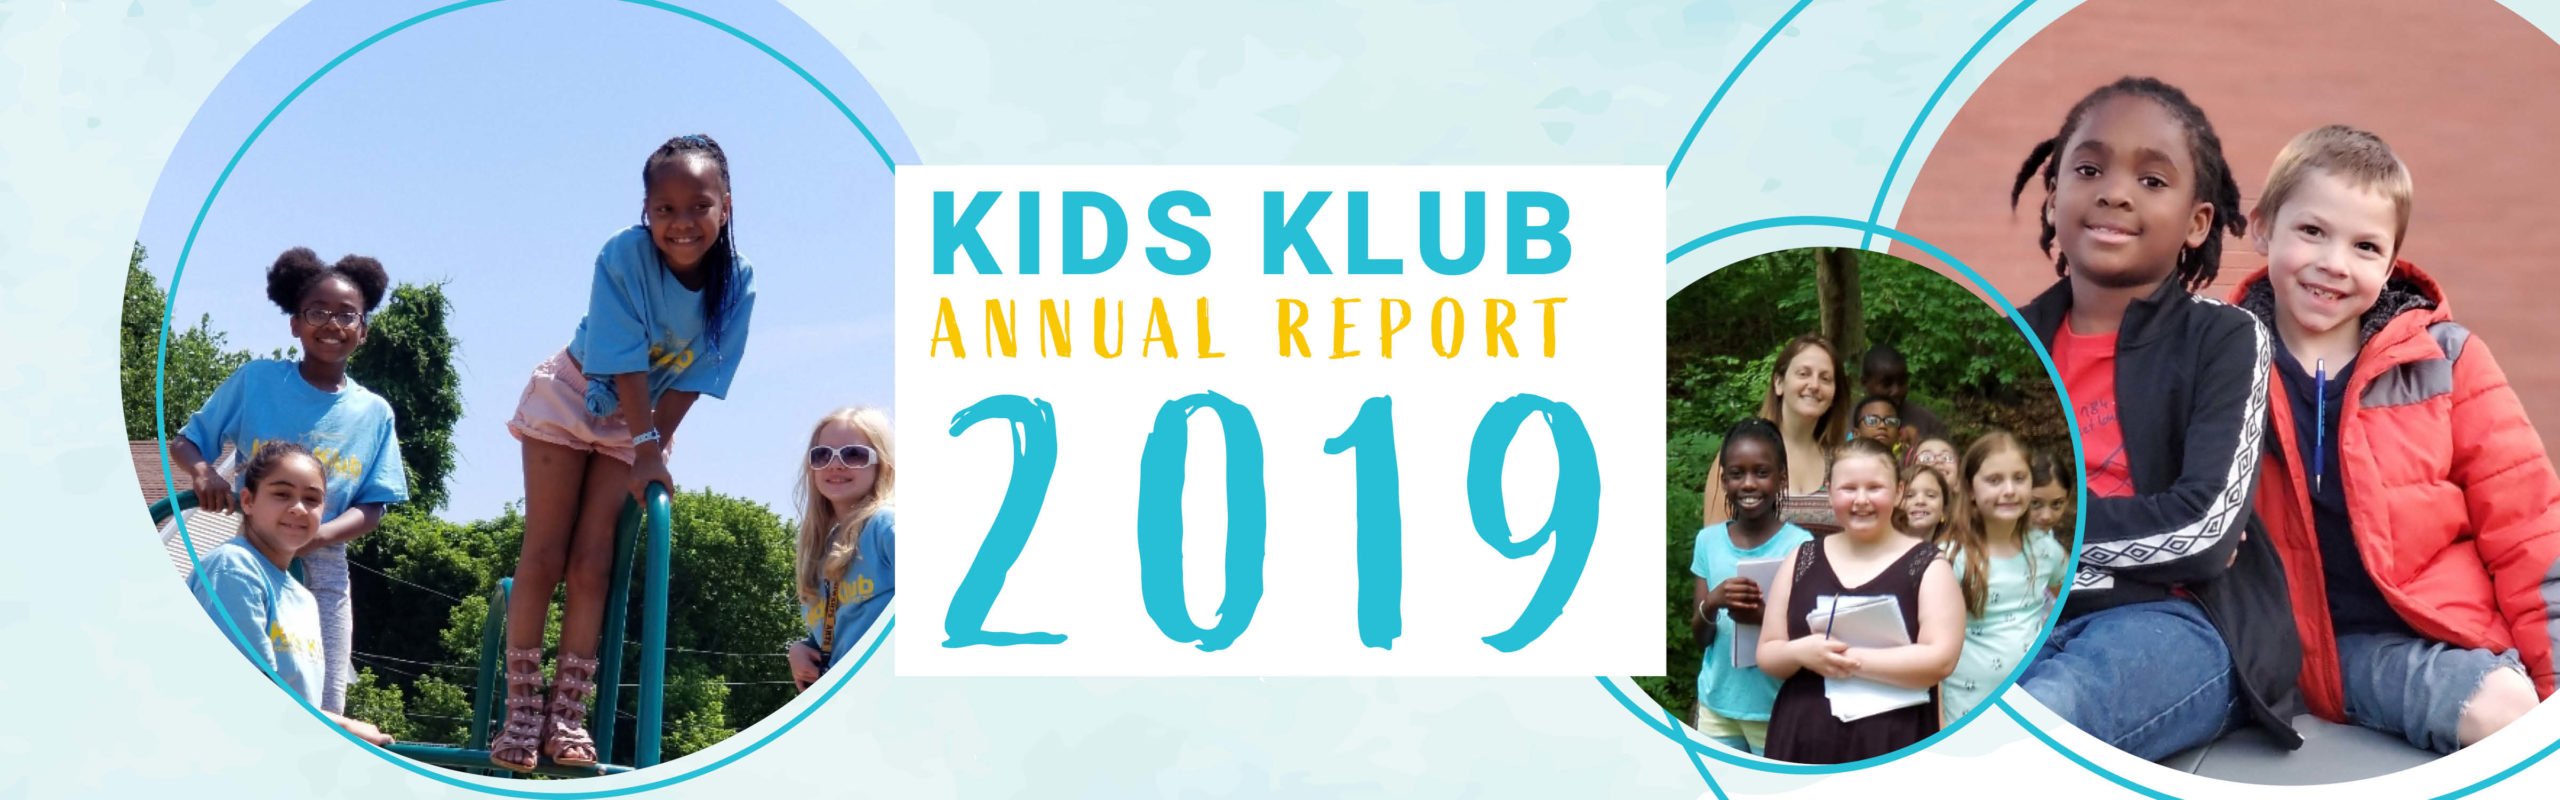 2019 Annual Report - Kids Klub